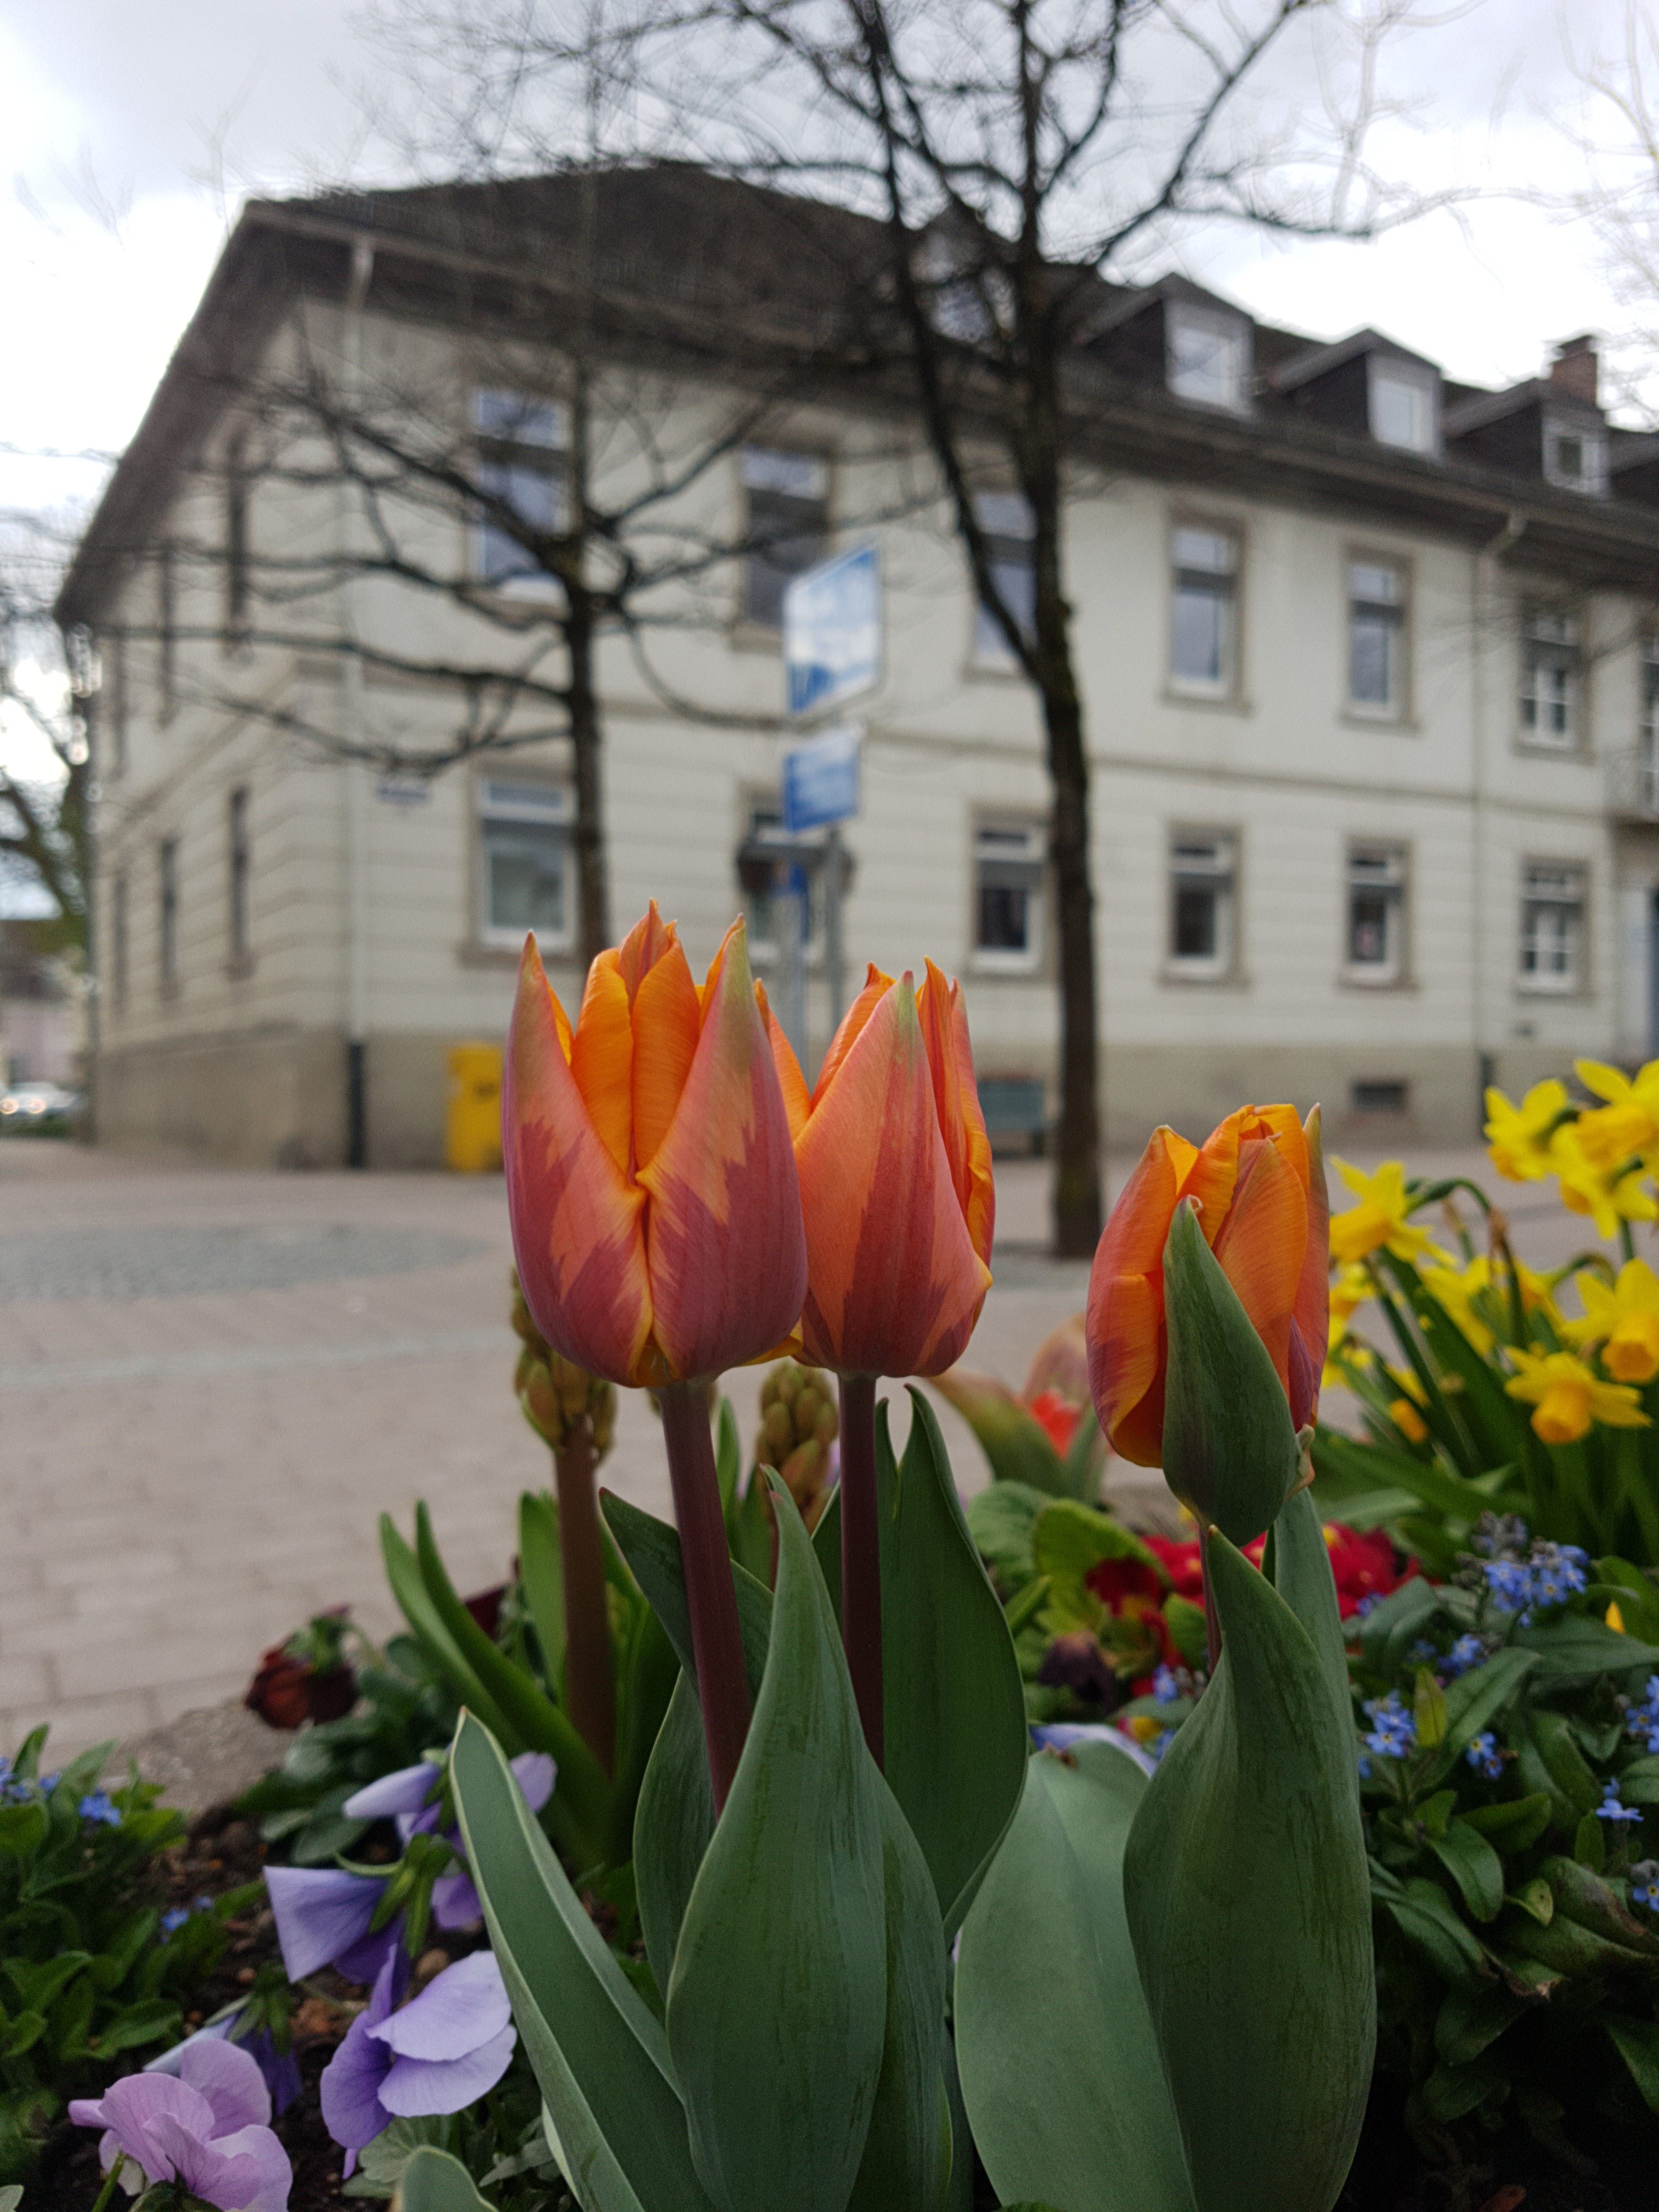 Das ehemalige Bezirksamt von Schopfheim mit einem Blumenkübel im Vordergrund.